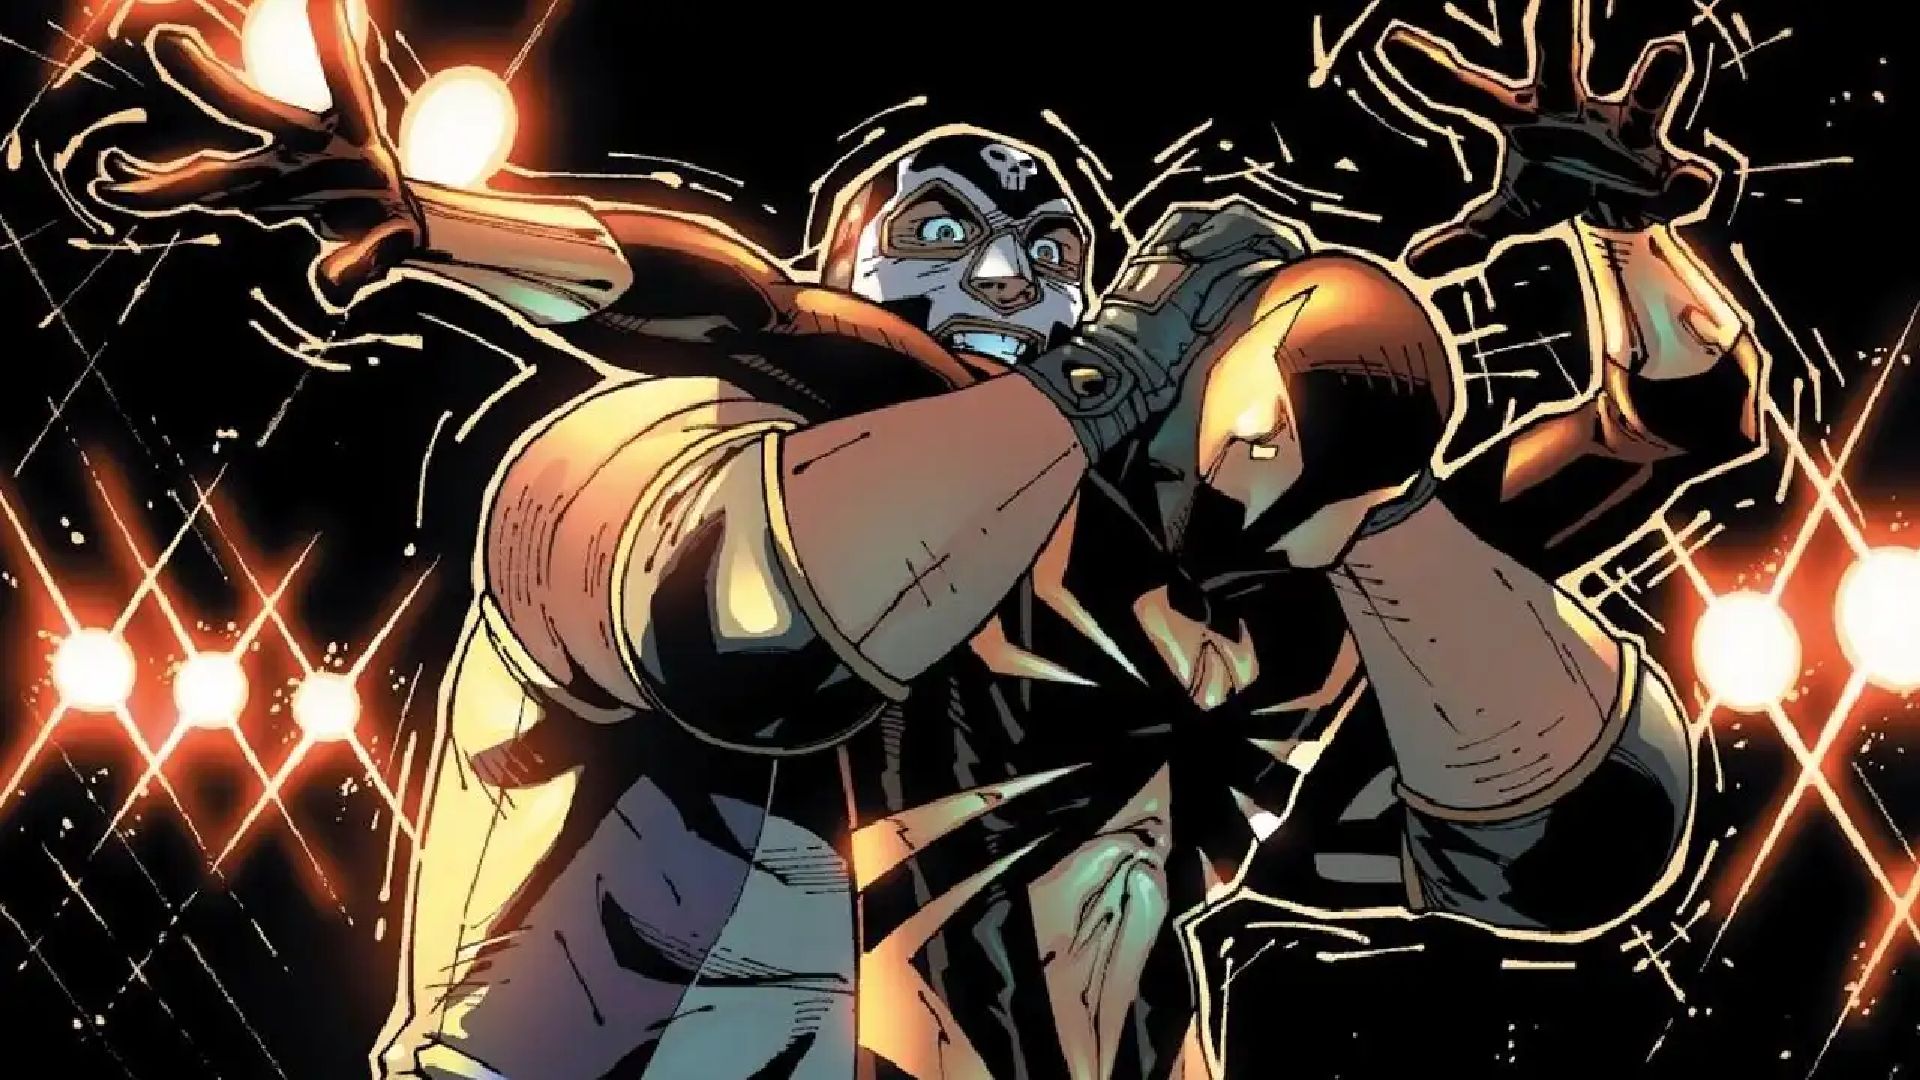 El Muerto pelea con Spider-Man en comic de Marvel